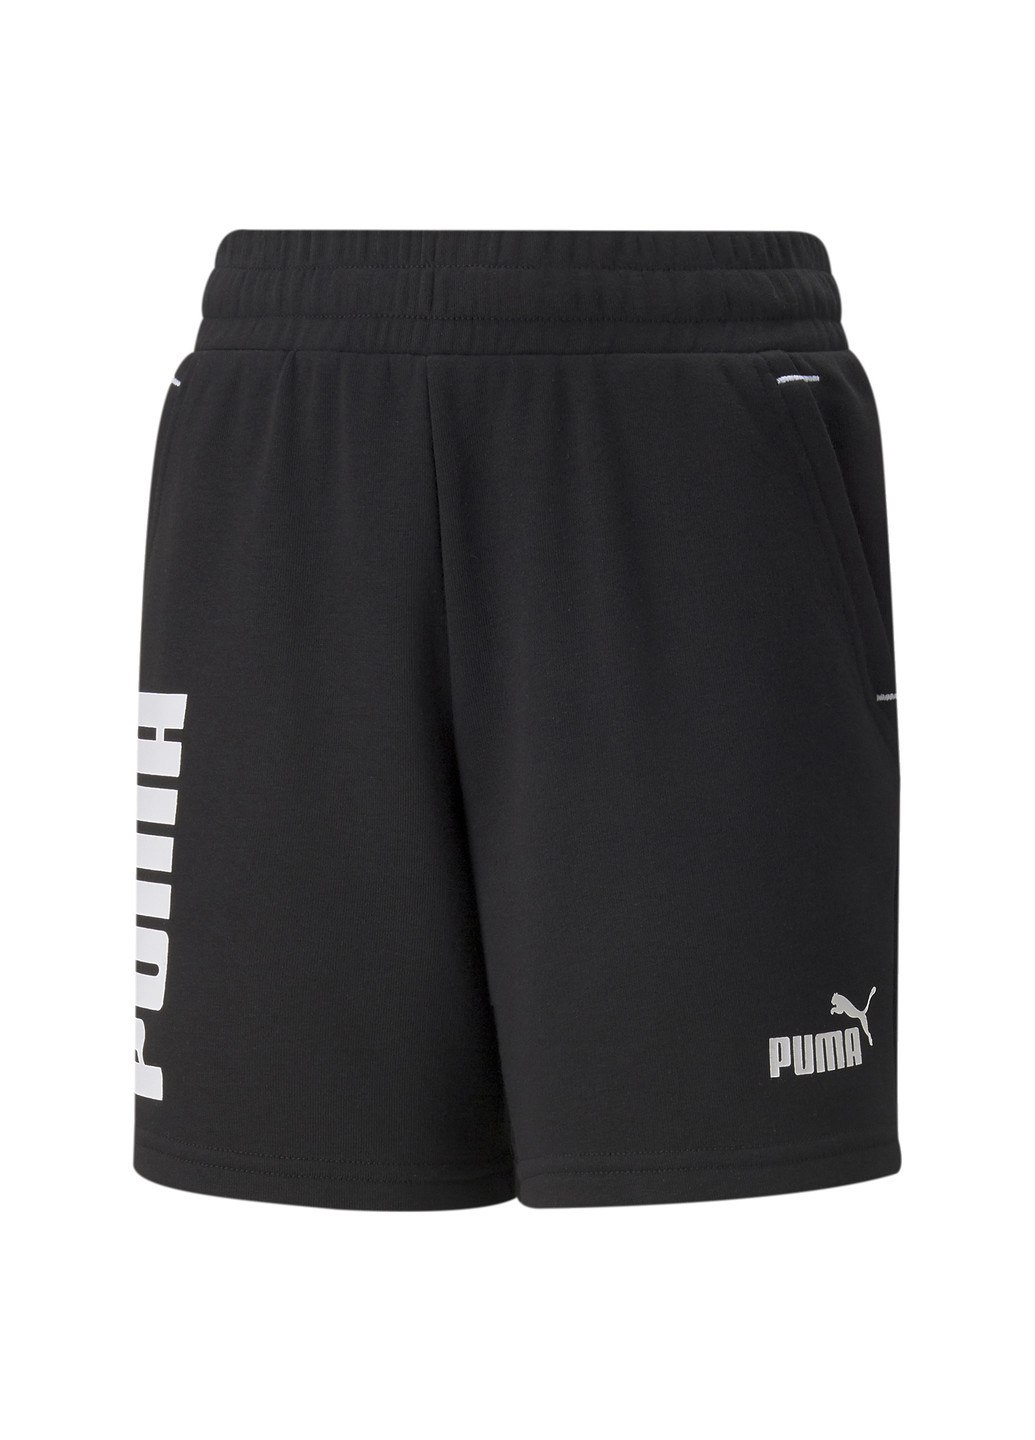 Детские шорты Power Youth Shorts Puma однотонные чёрные спортивные хлопок, полиэстер